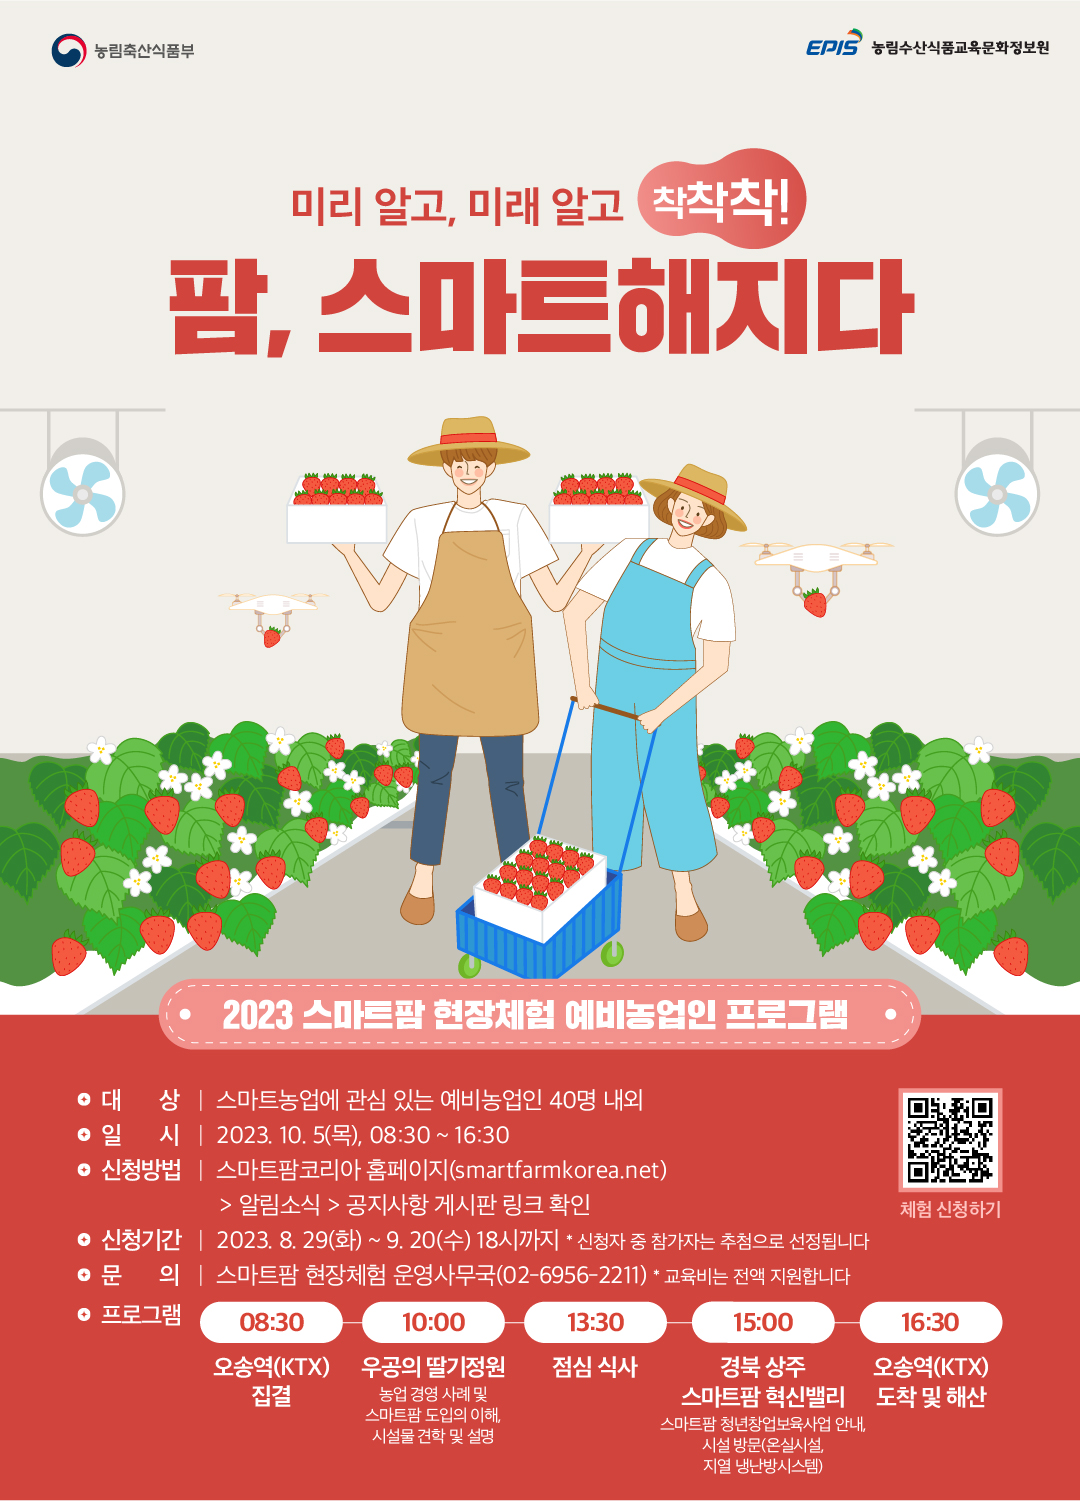 우공의 딸기정원&경북 상주 스마트팜 혁신밸리